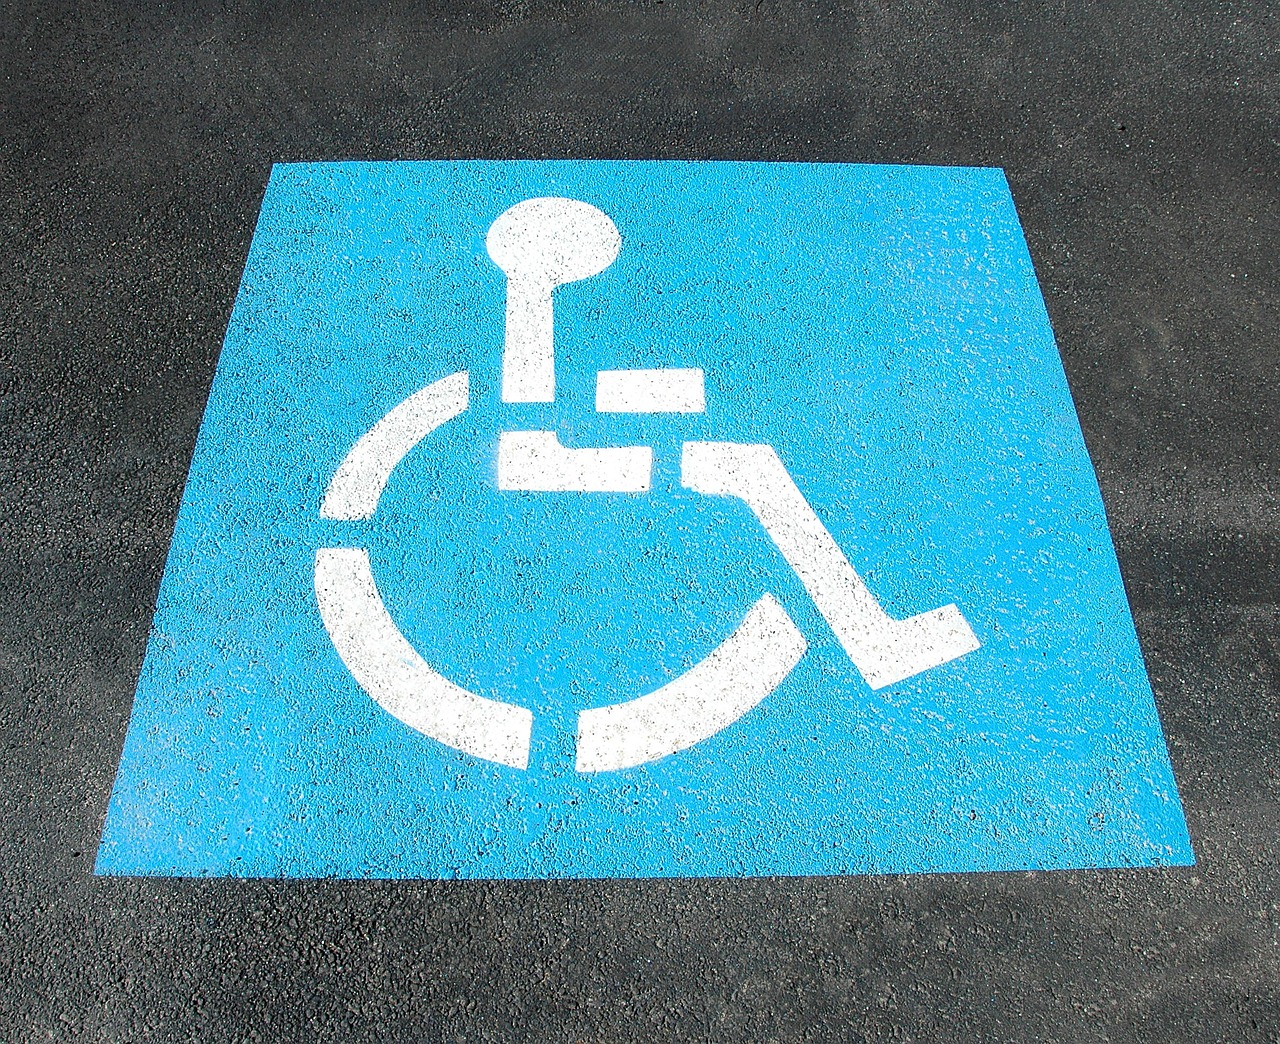 Urlop osób niepełnosprawnych